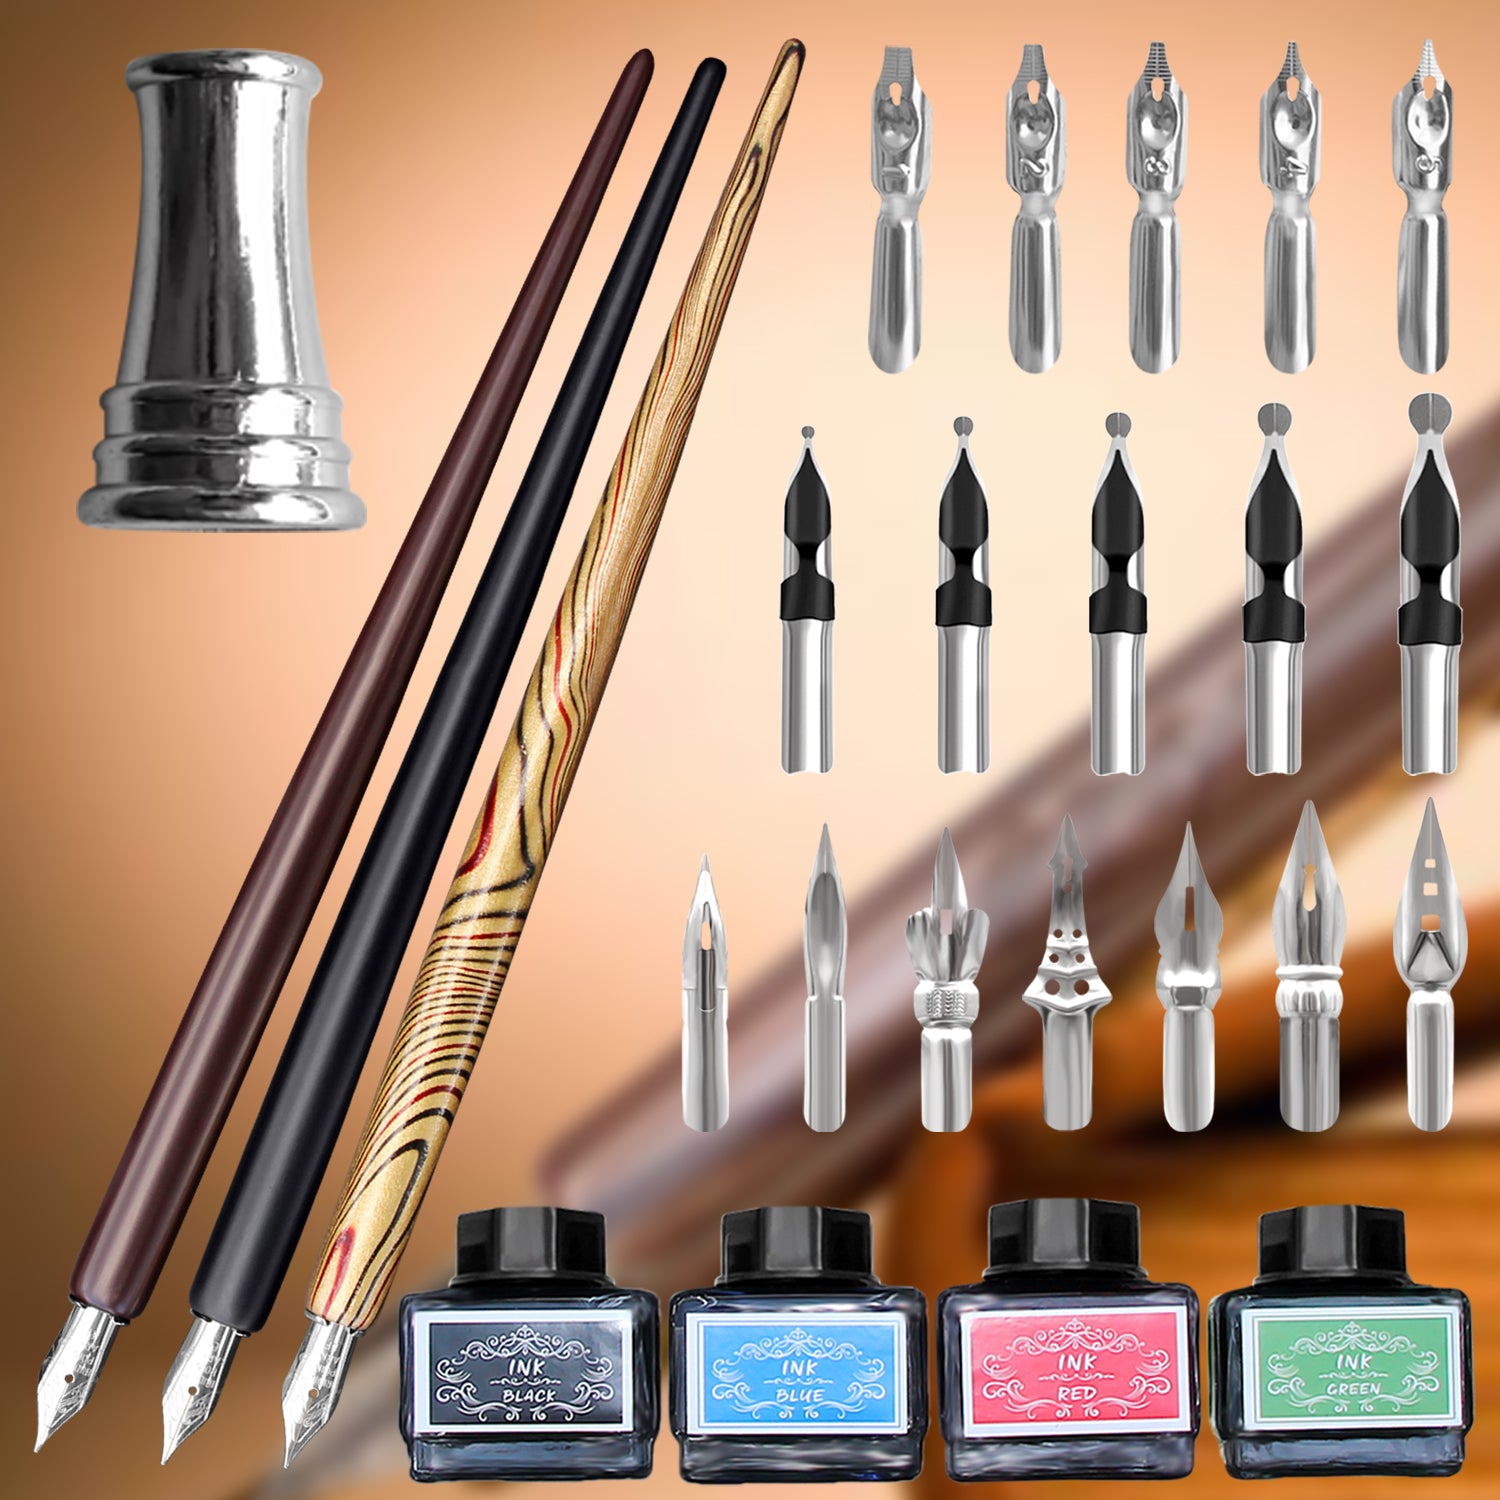 Wooden Pen, Quill, Ink & Wax Stamp Set – Trustela